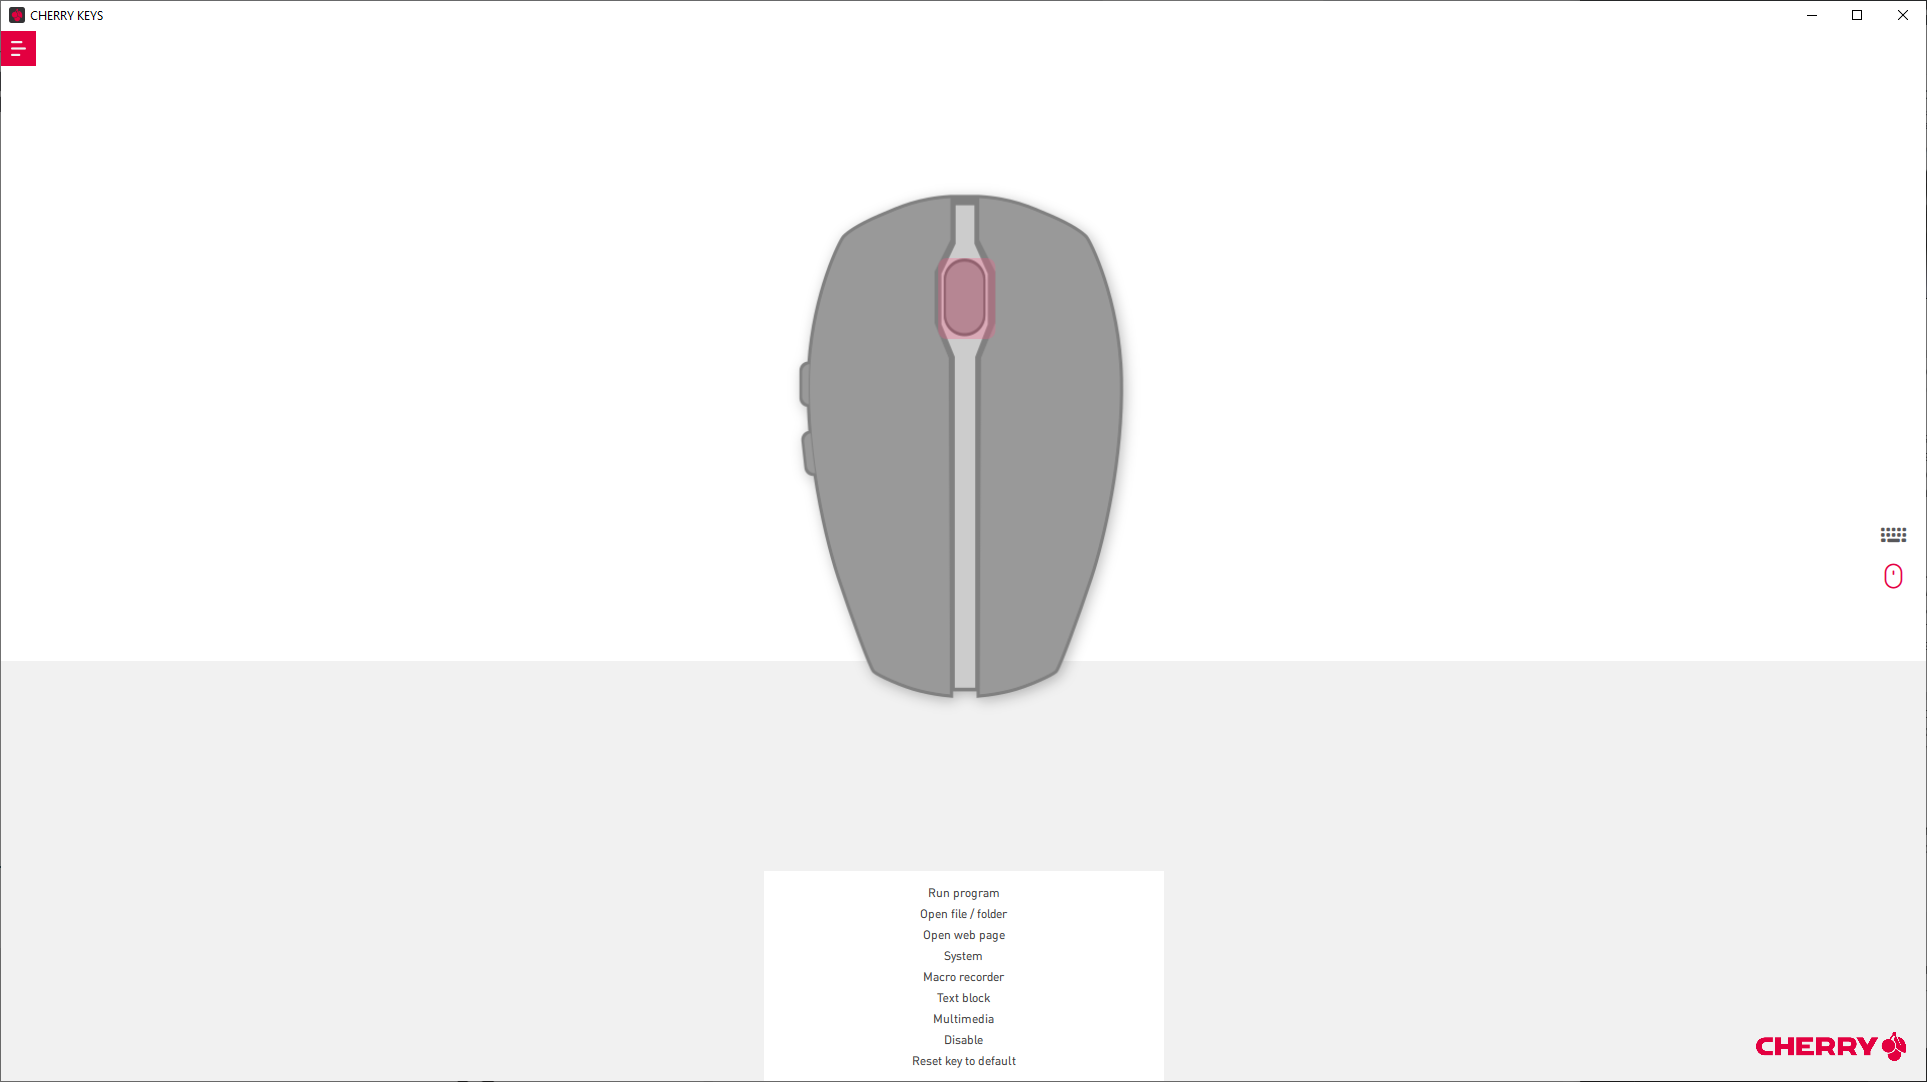 Cherry Keys programvara visar möjligheten att programmera om knappar på Gentix-musen